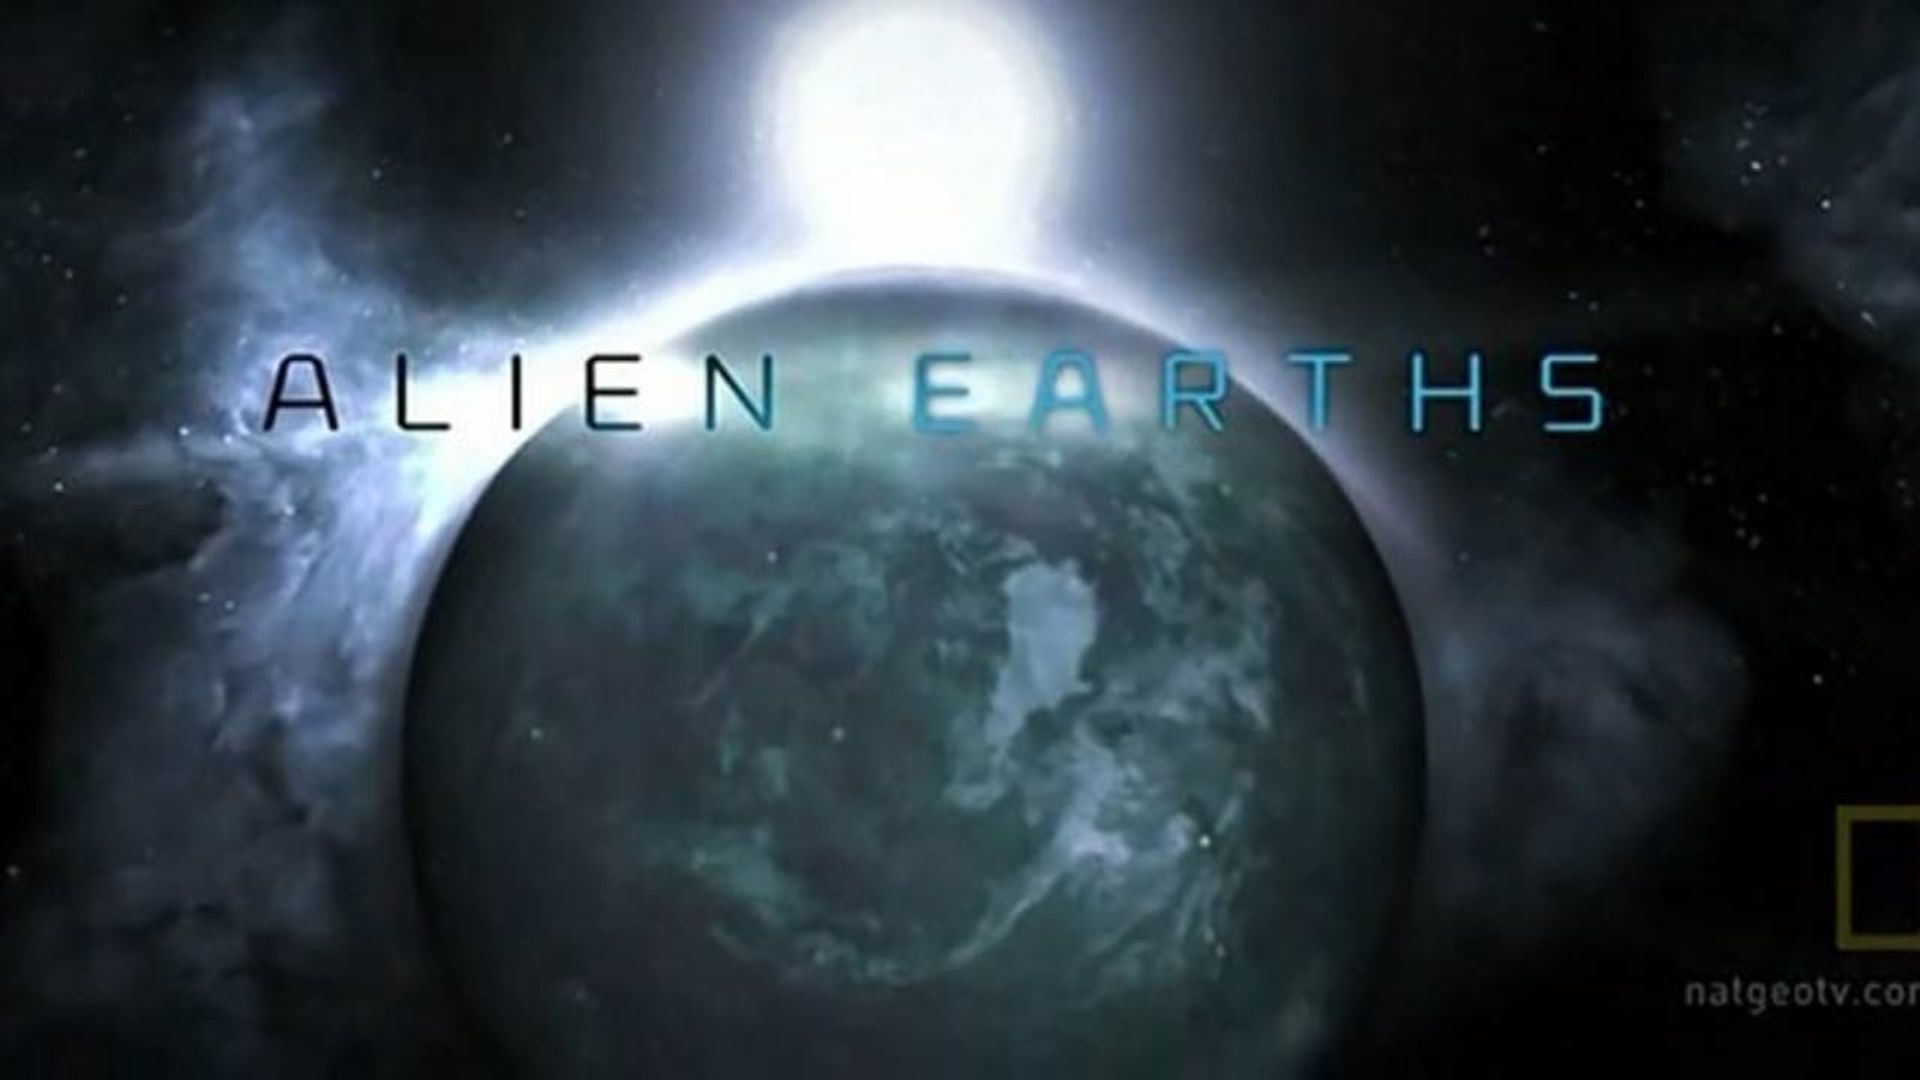 Alien Earths background